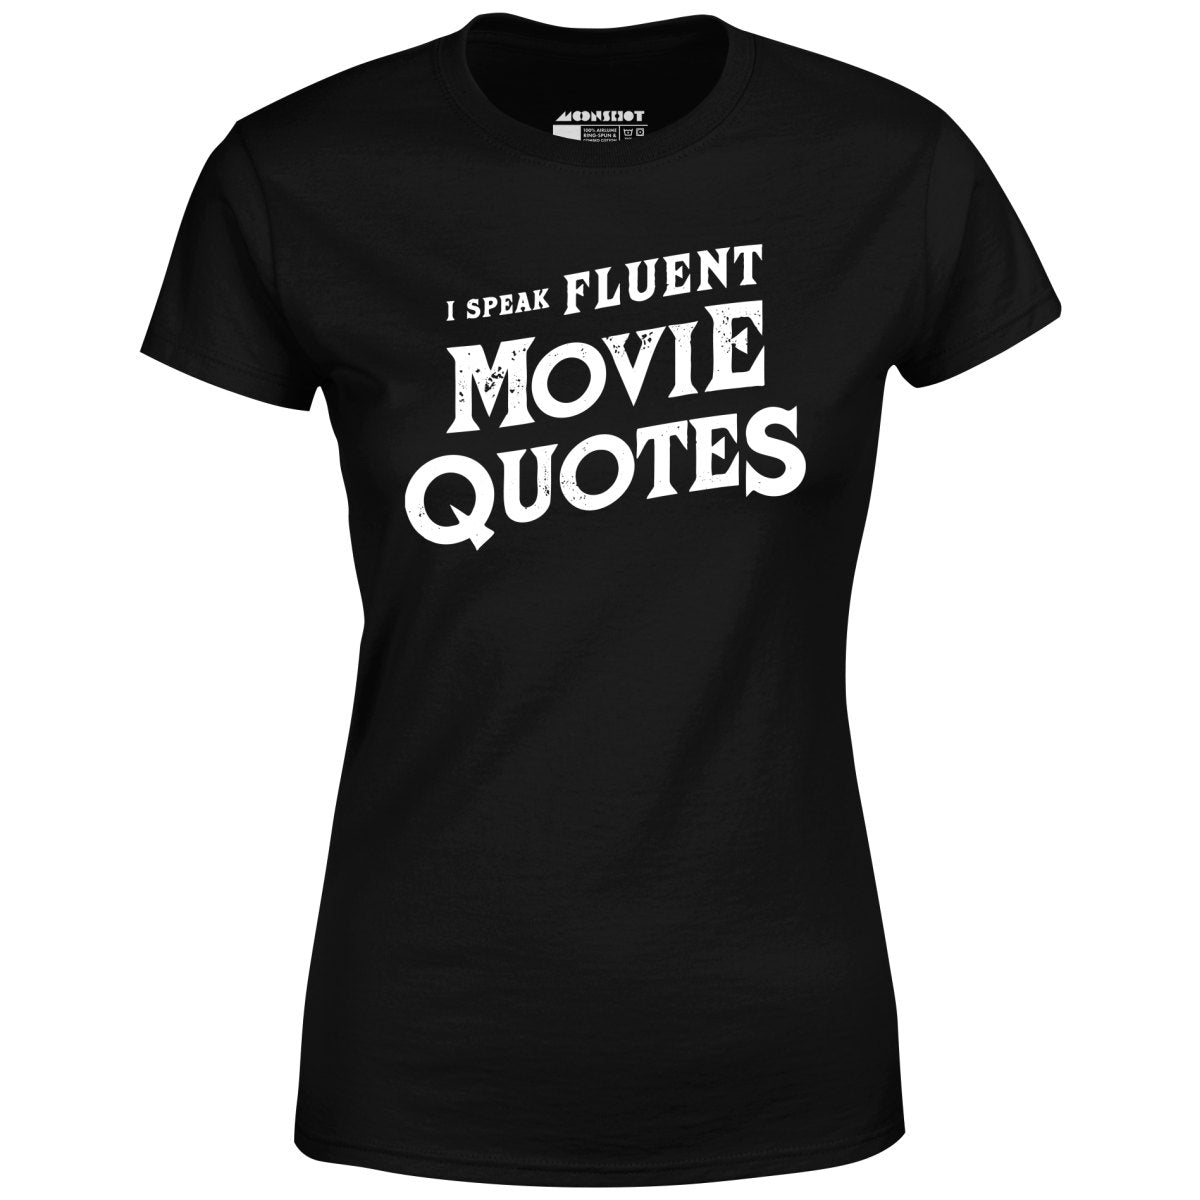 I Speak Fluent Movie Quotes - Women's T-Shirt